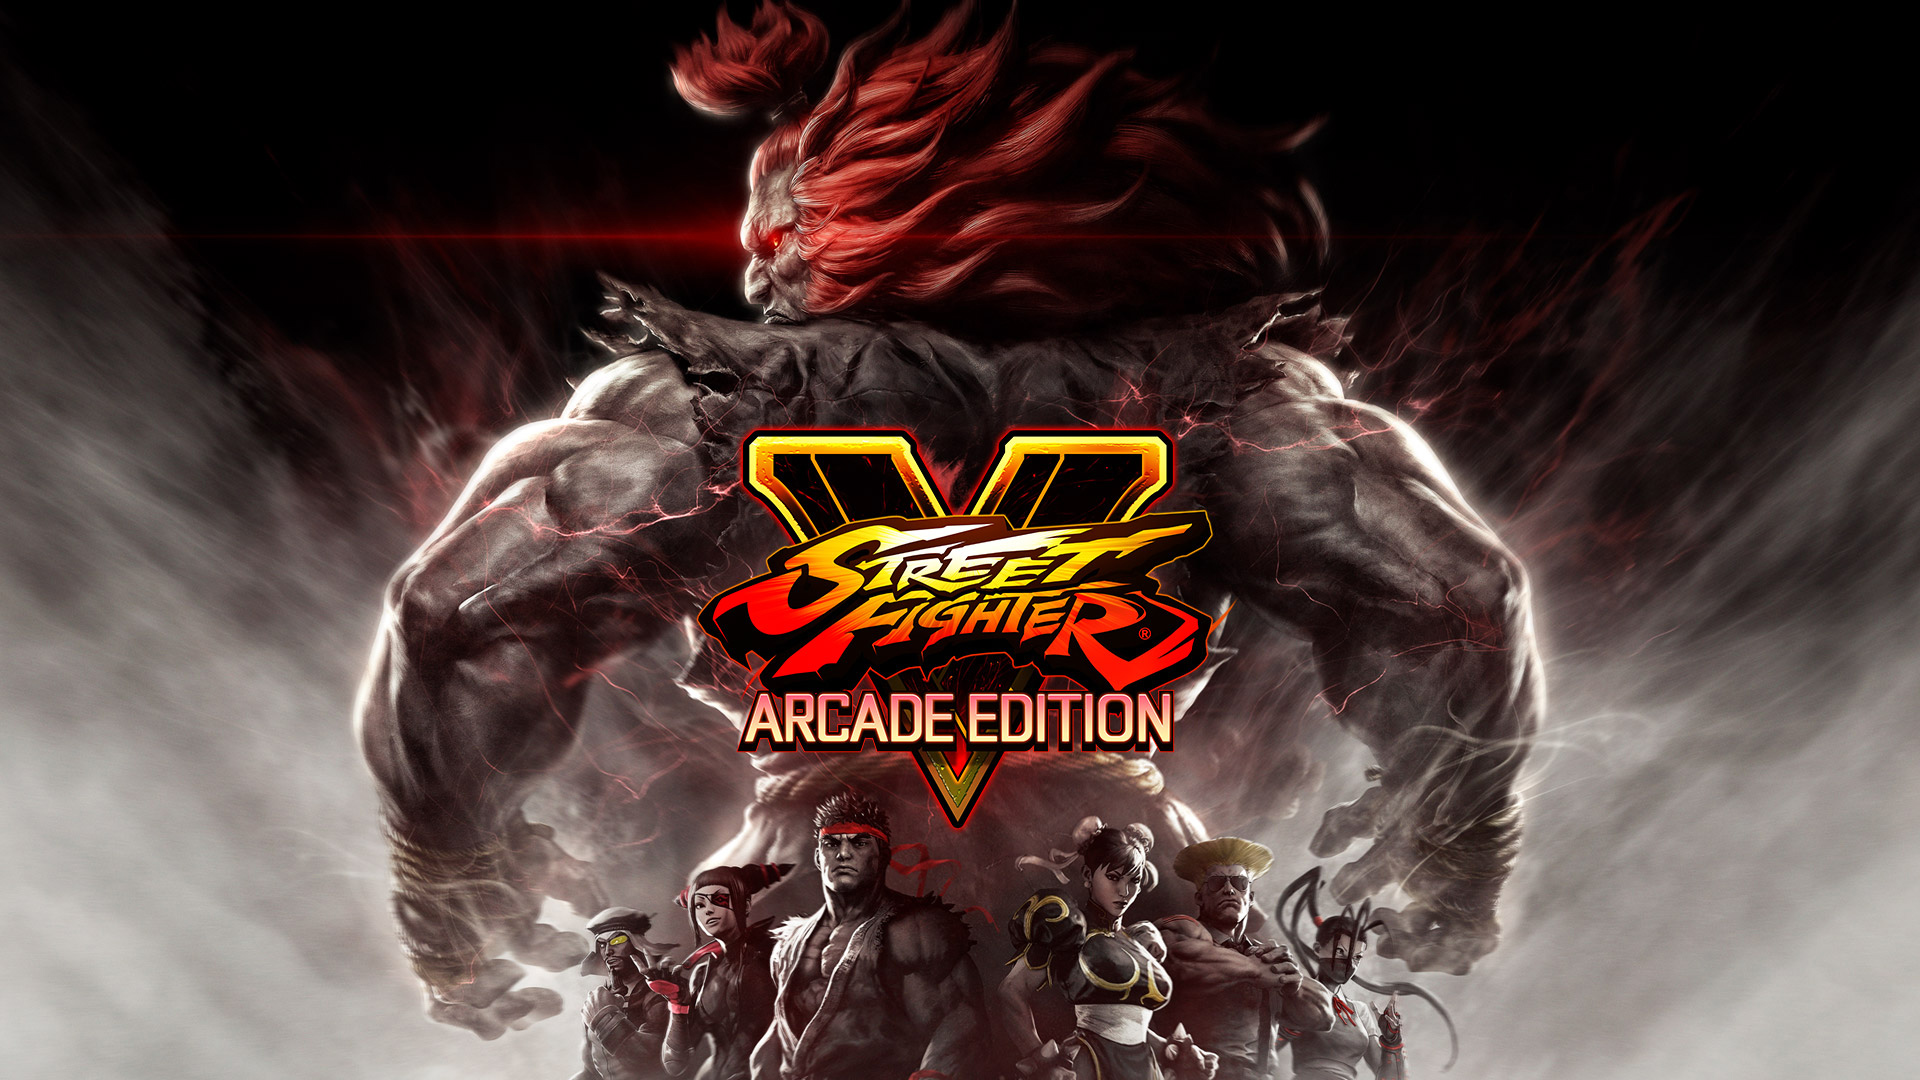 Arcade Edition Wallpaper From Street Fighter V